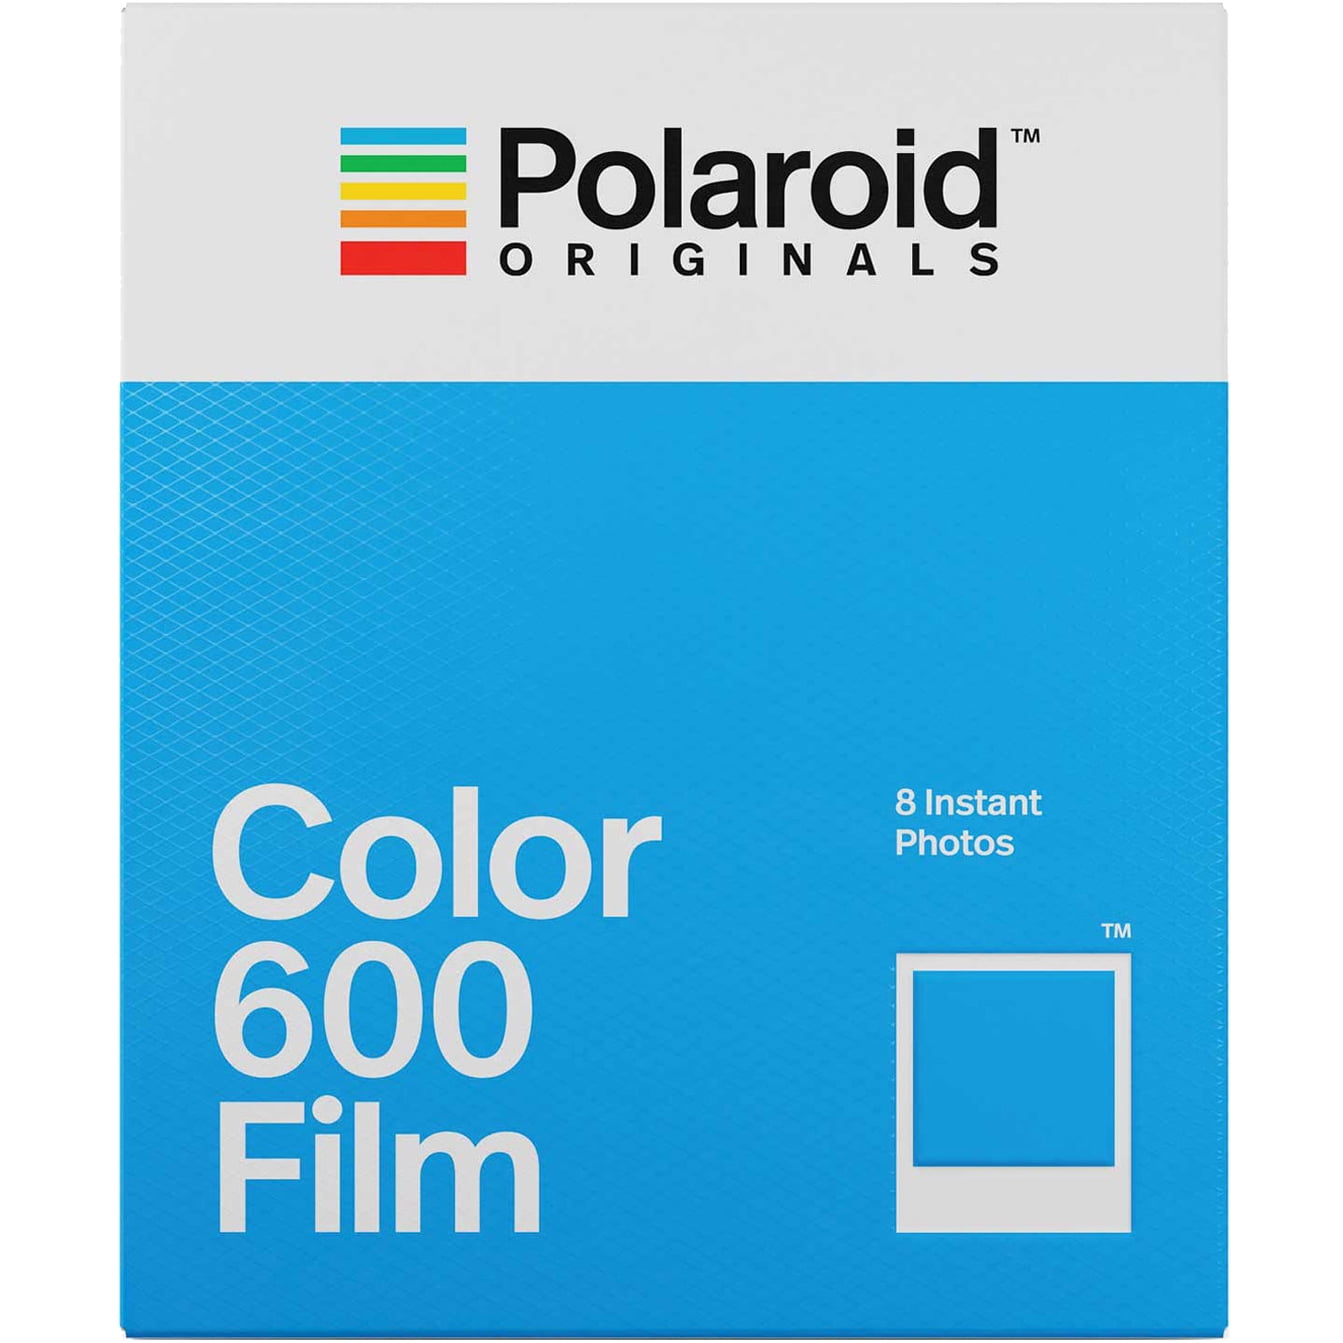 ekskrementer Grusom gåde Polaroid Originals Color Film for 600 - Walmart.com